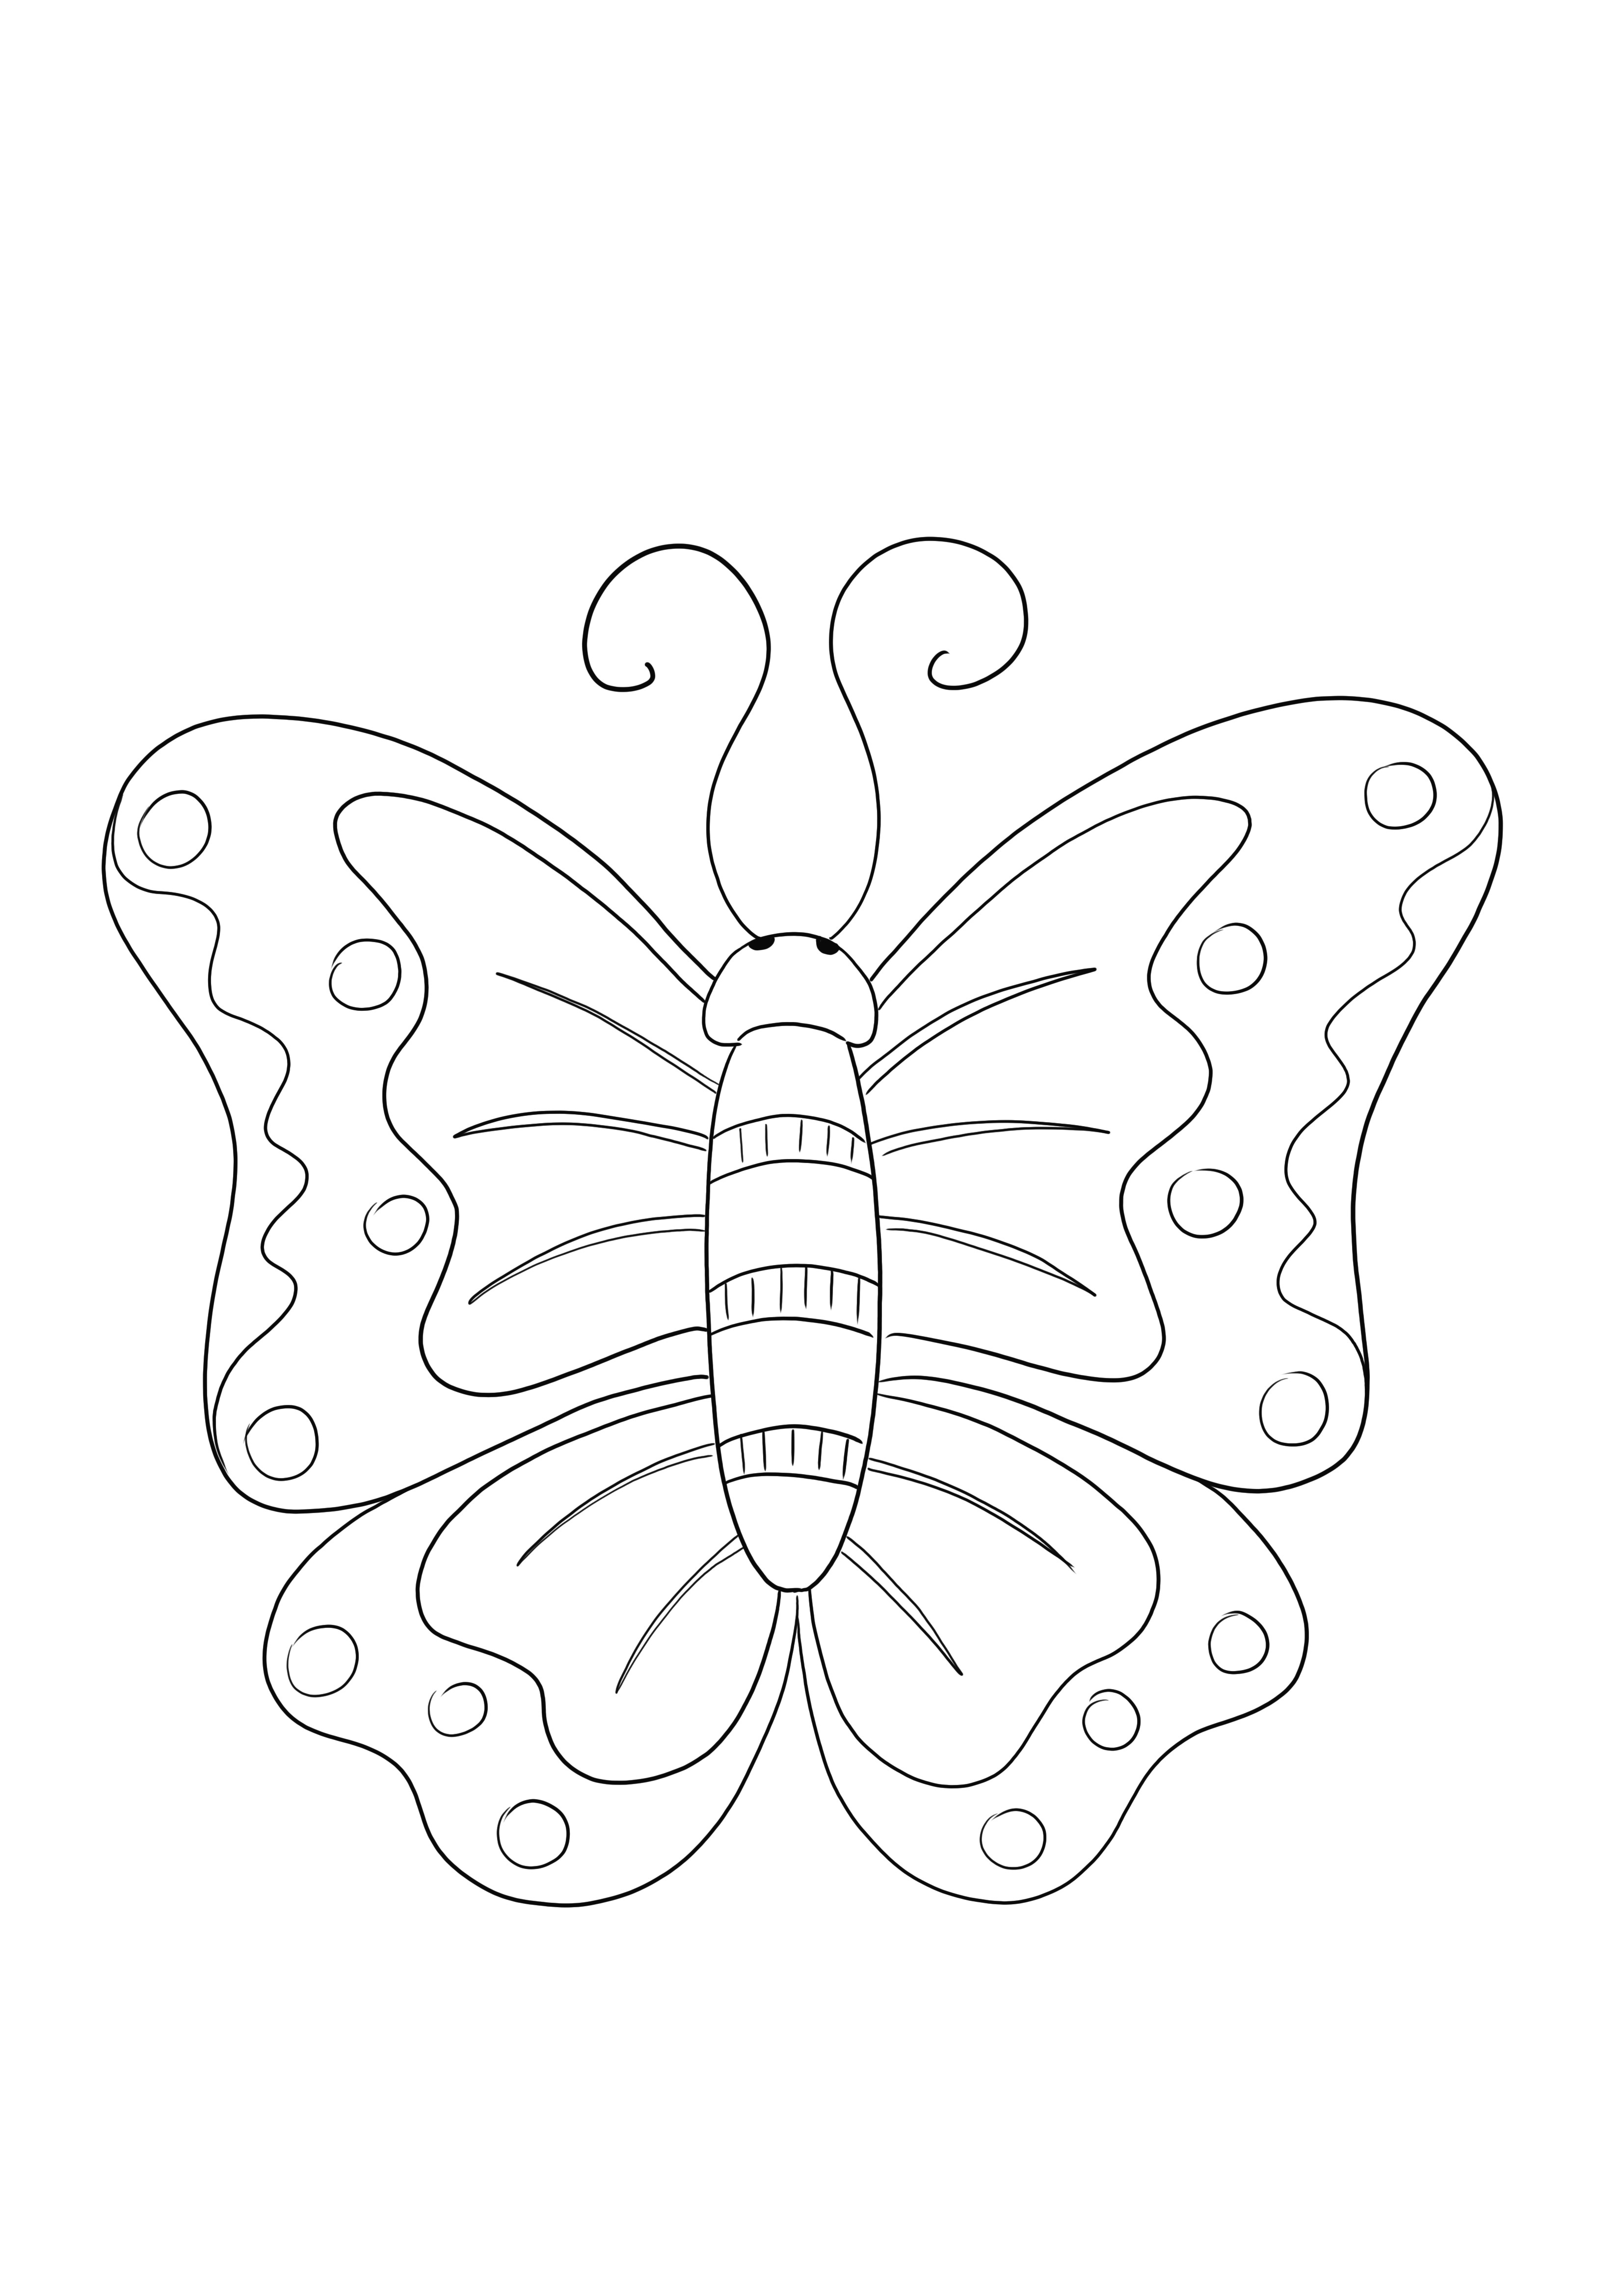 Çocukların böcekler hakkında bilgi edinmesi için ücretsiz Kelebek boyama sayfası - yazdırması yeterlidir